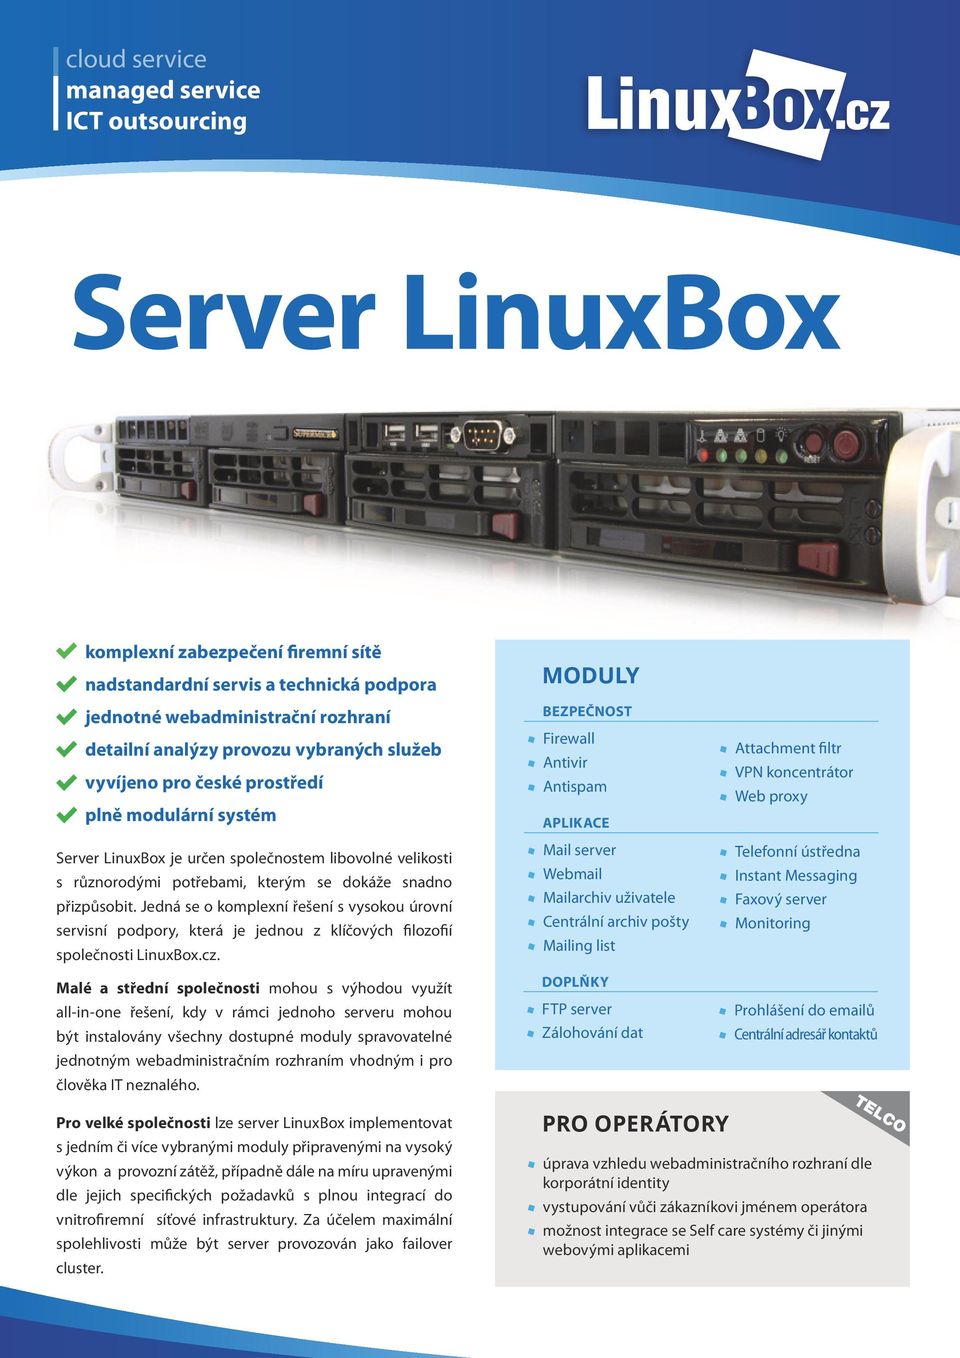 Jedná se o komplexní řešení s vysokou úrovní servisní podpory, která je jednou z klíčových filozofií společnosti LinuxBox.cz.